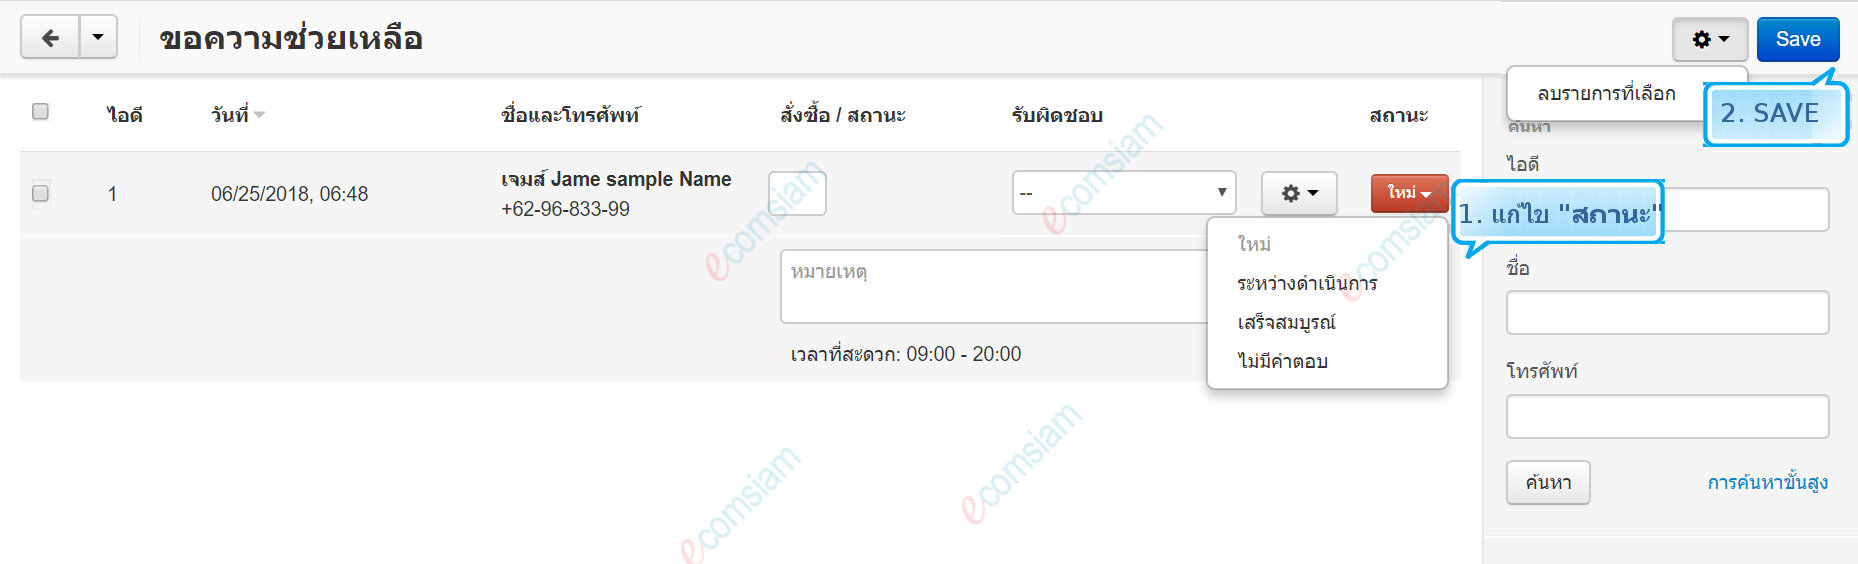 เว็บไซต์สำเร็จรูปไทย - คู่มือร้านออนไลน์ - สั่งซื้อ - ขอความช่วยเหลือ call requests